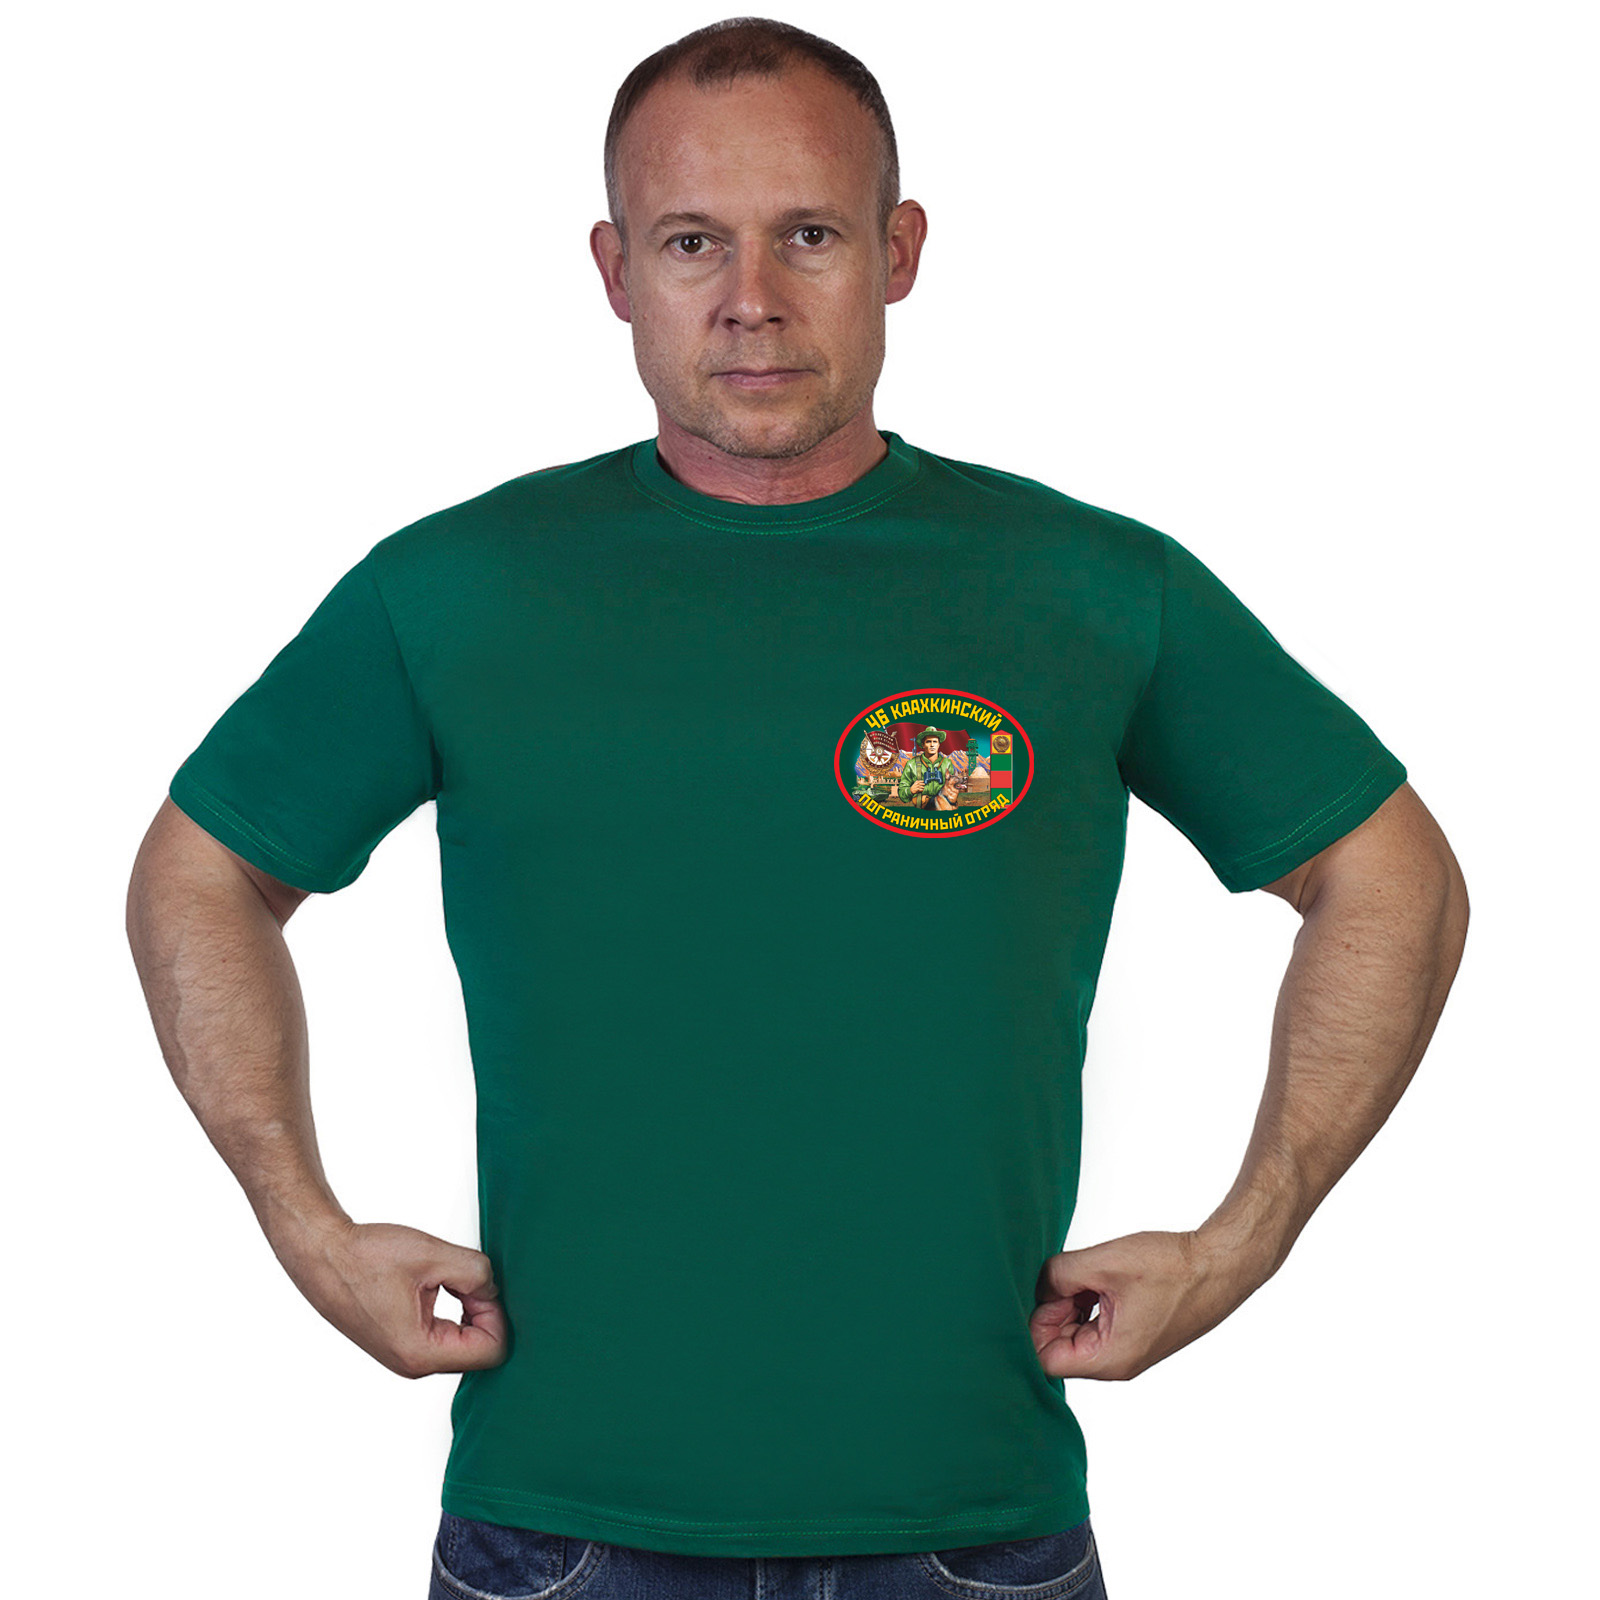 Купить в интернет магазине футболку 46 Каахкинский погранотряд